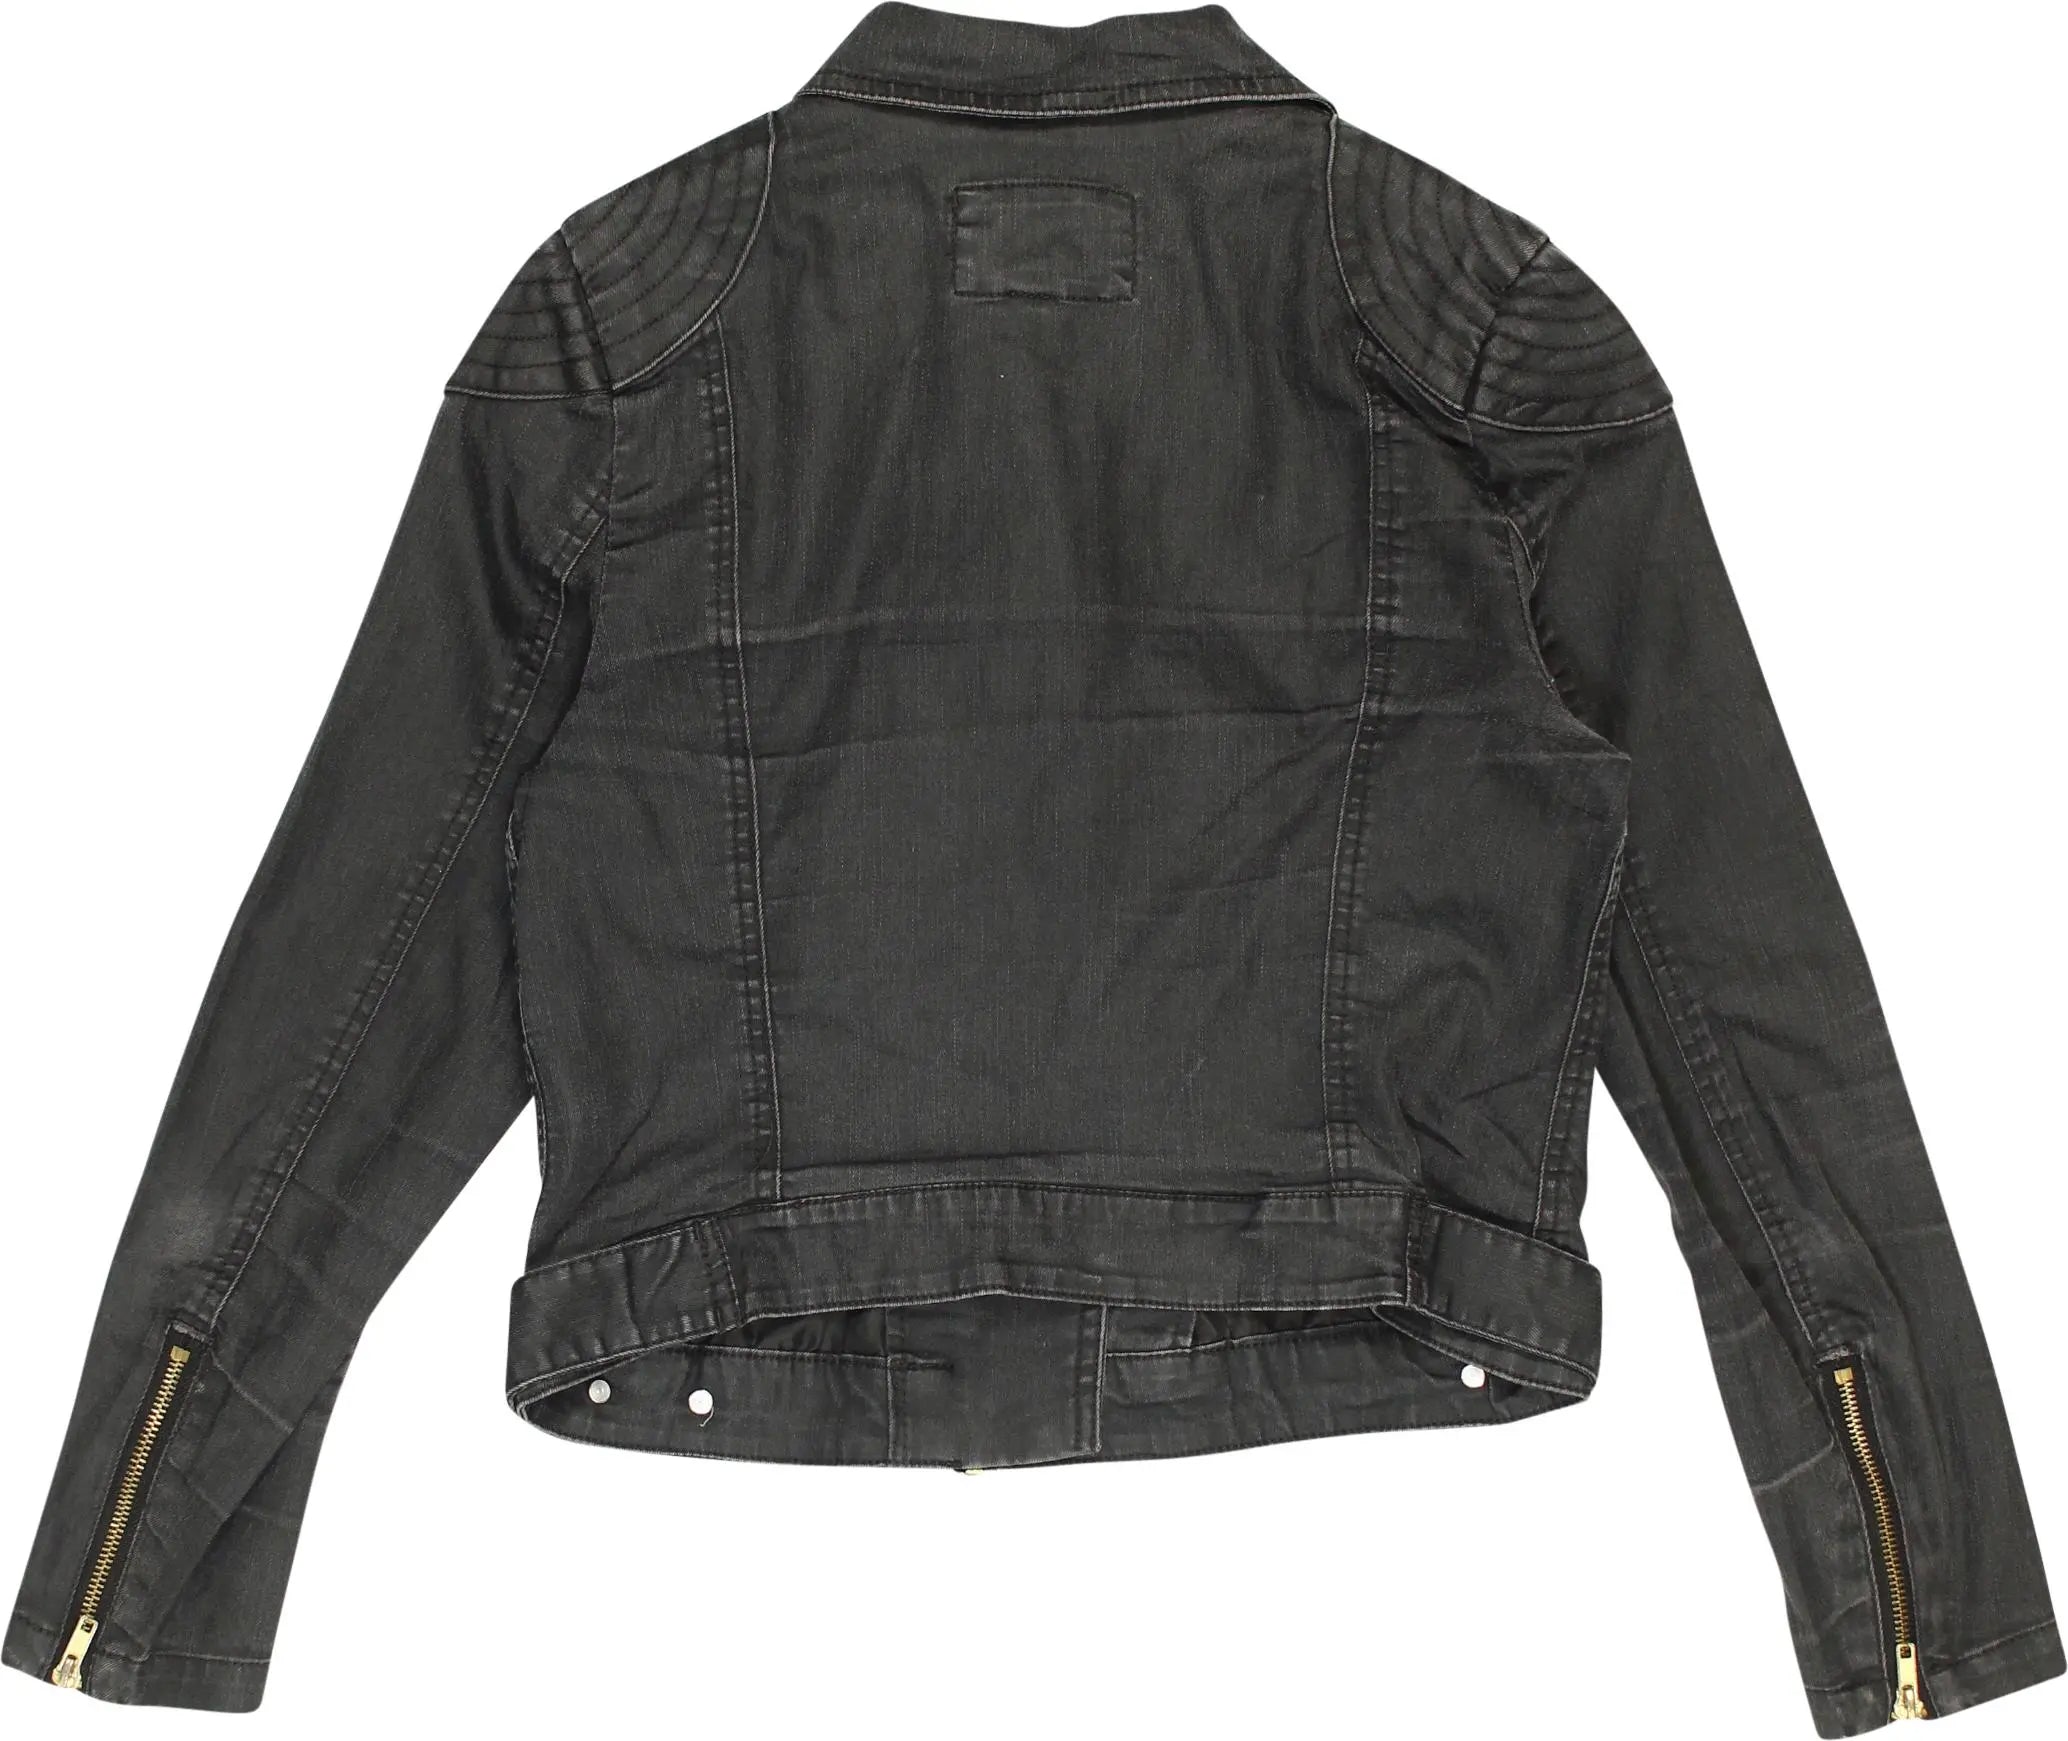 H&M - Denim Biker Jacket- ThriftTale.com - Vintage and second handclothing